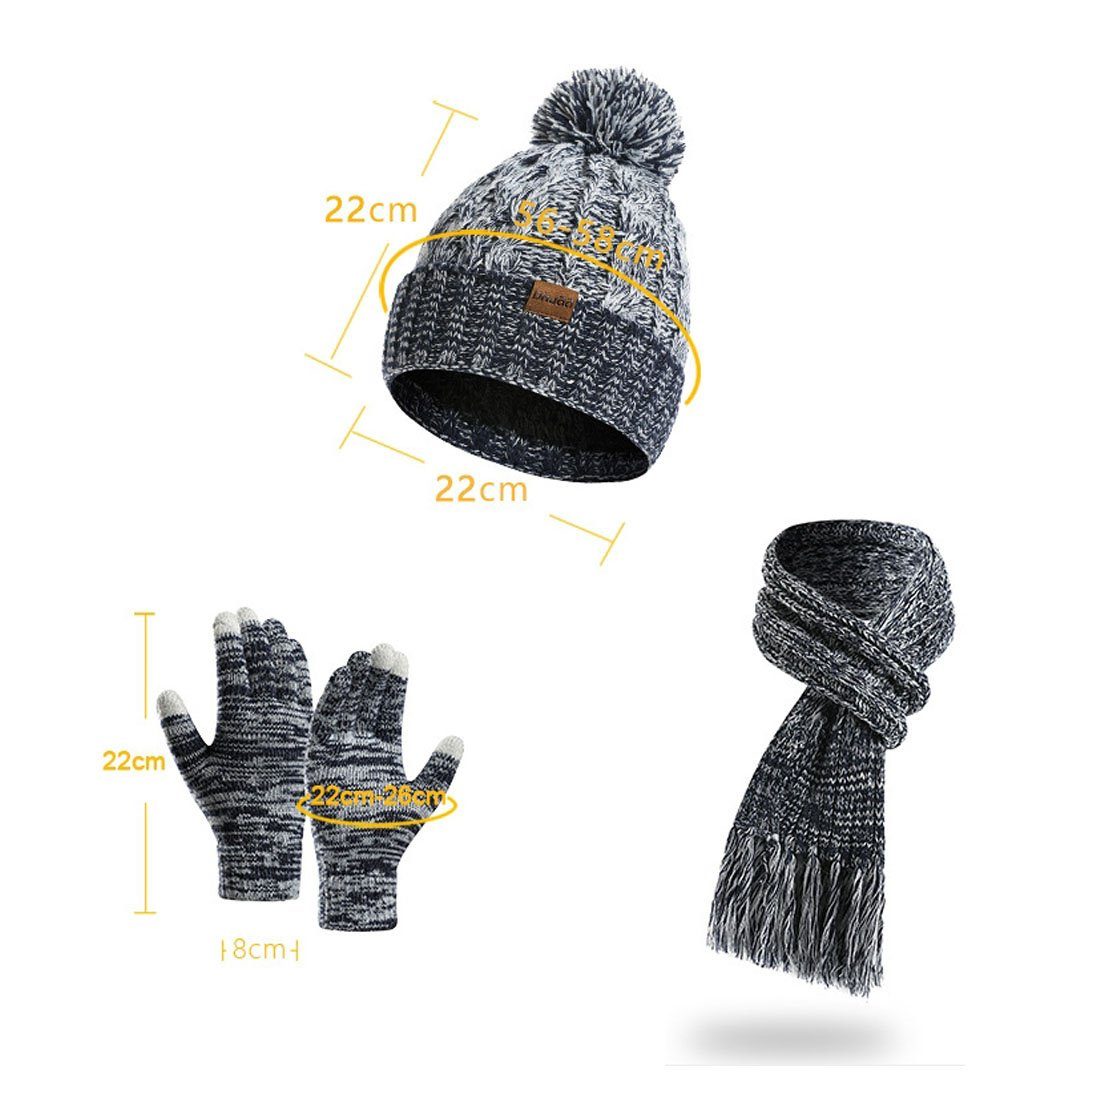 blau + aus Wolle, Schal 3er-Set DÖRÖY Wintermütze Touchscreen-Handschuhe Strickmütze Mütze +